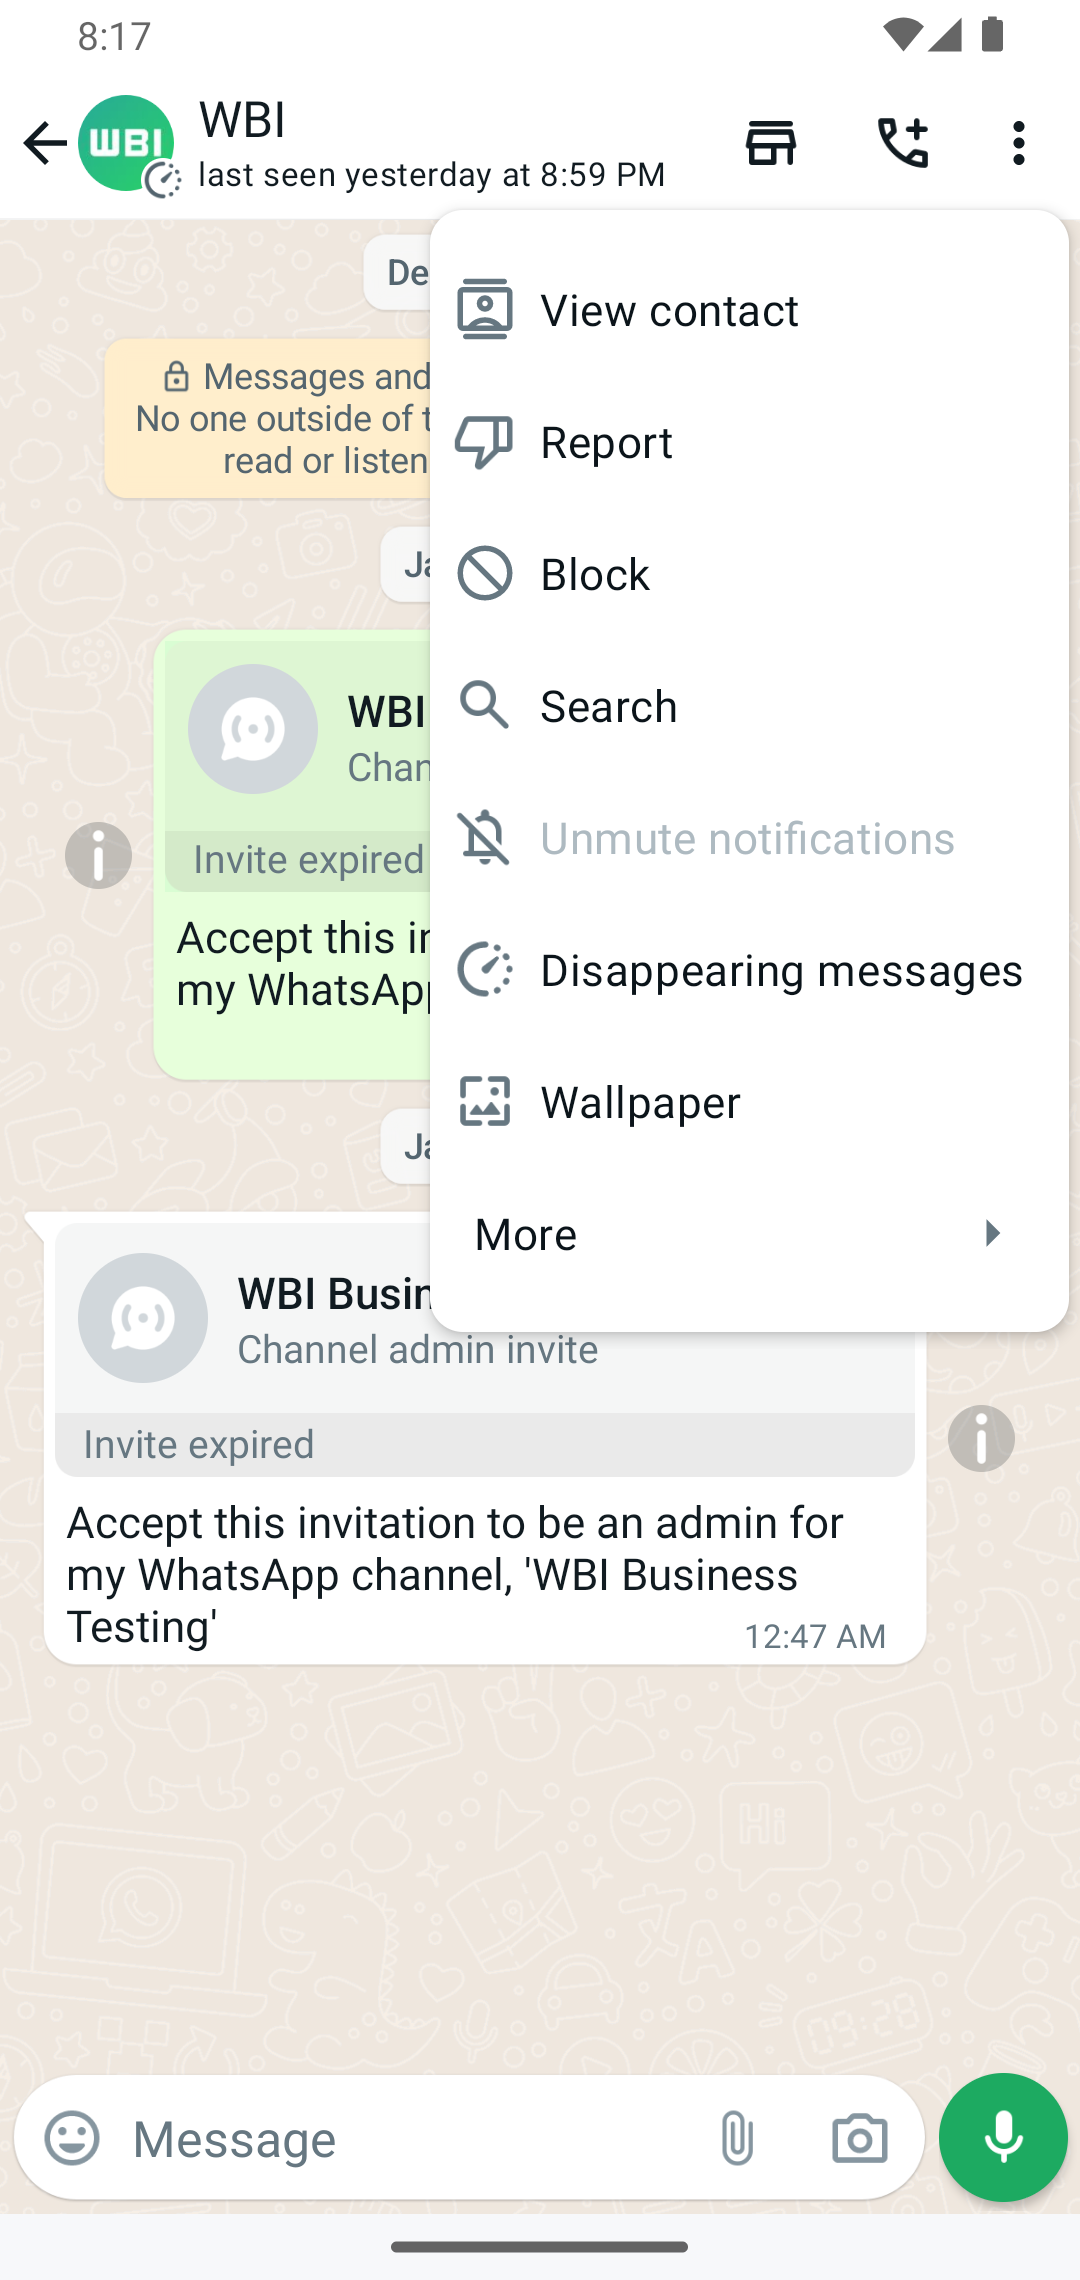 WhatsApp-overflow-menu-icons-beta-test